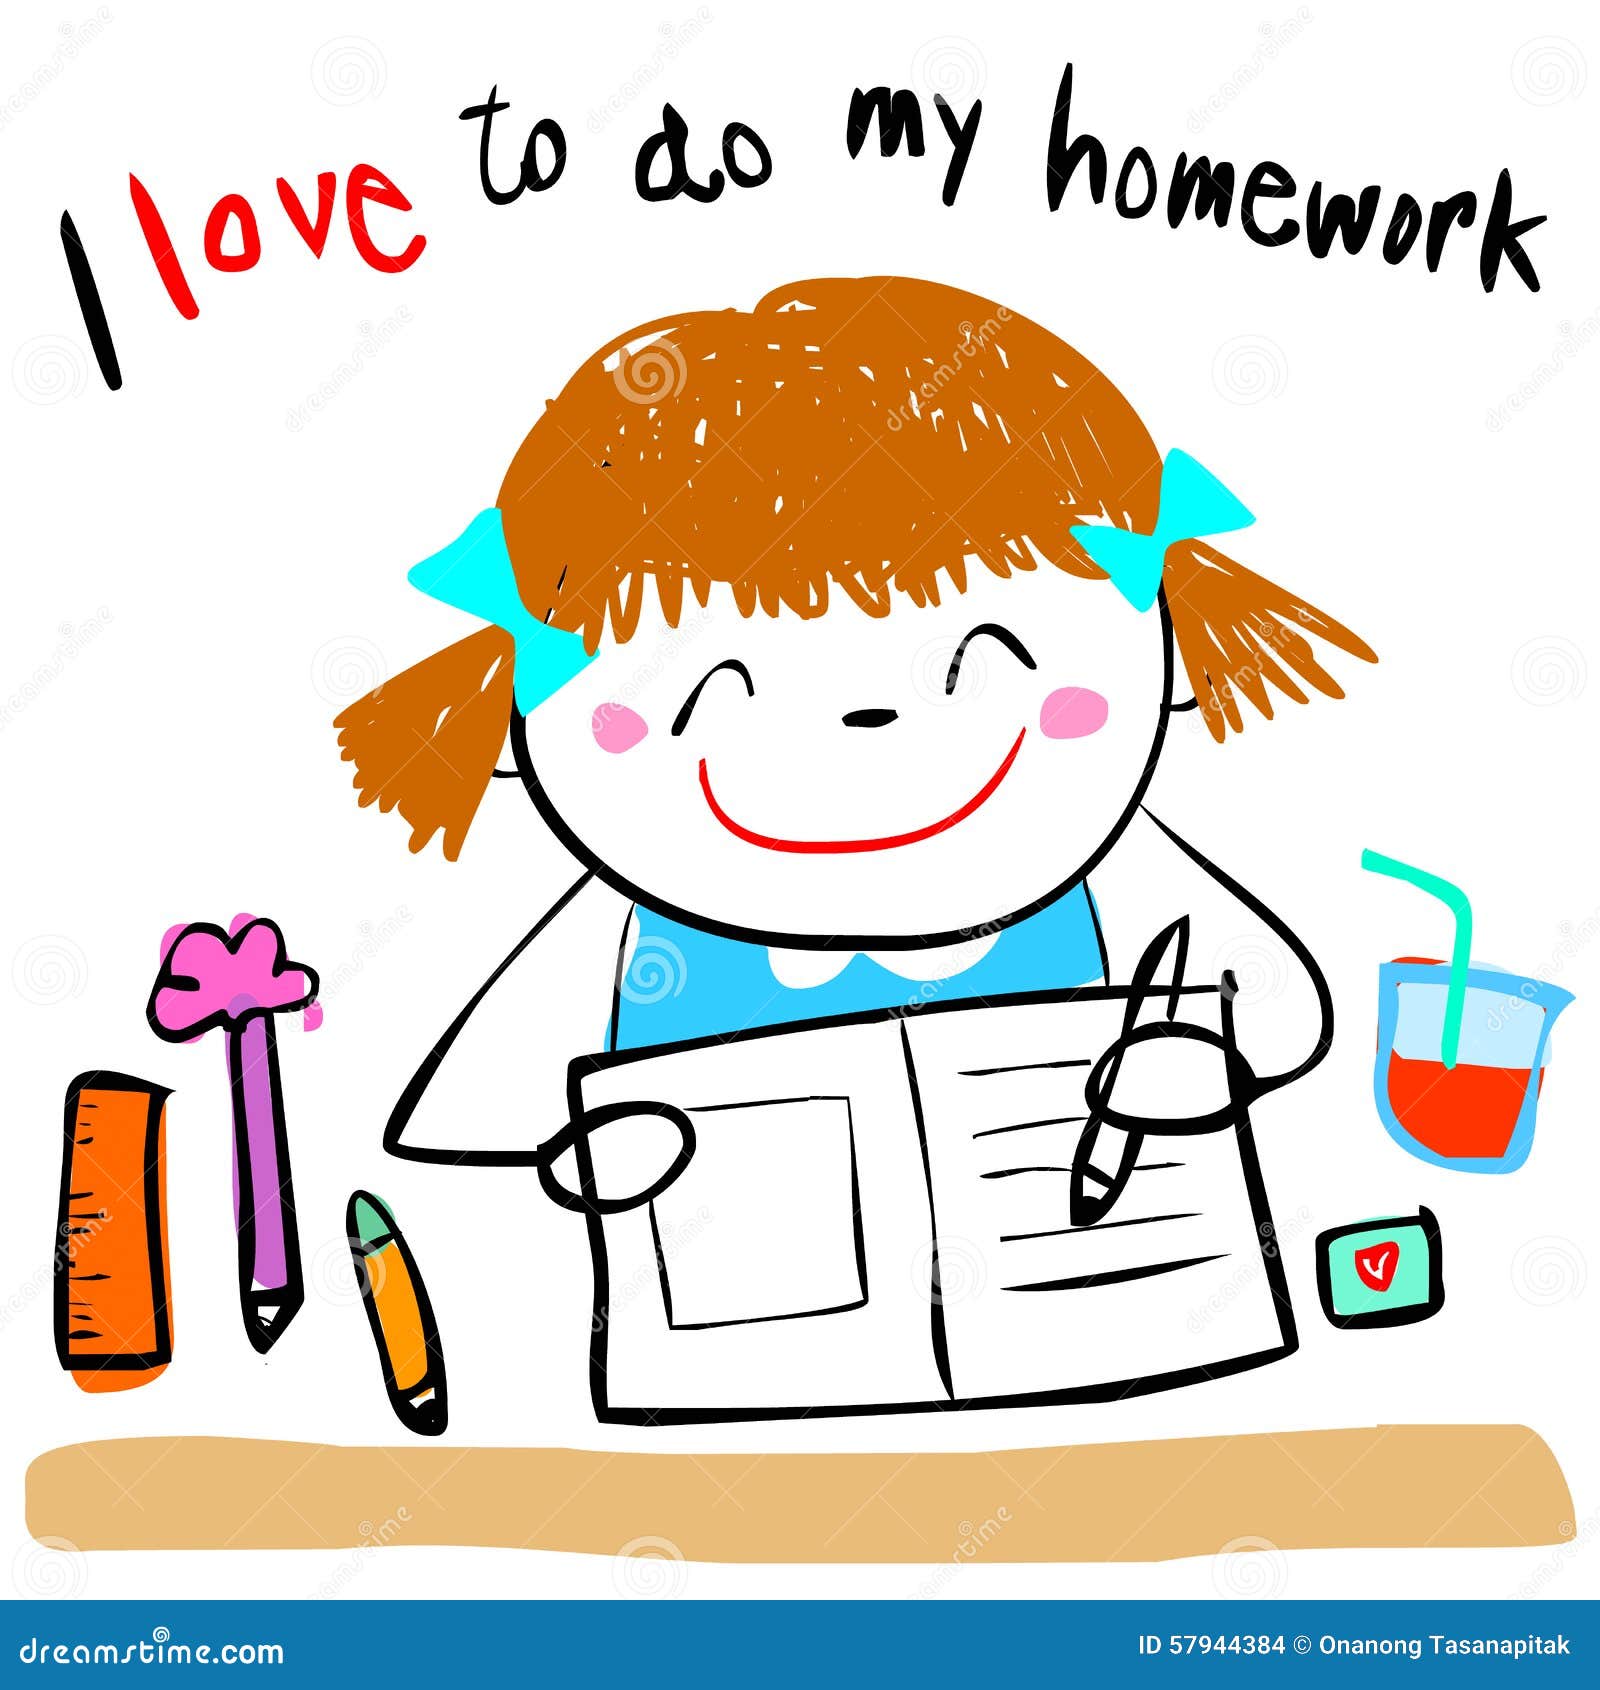 Homework clip art